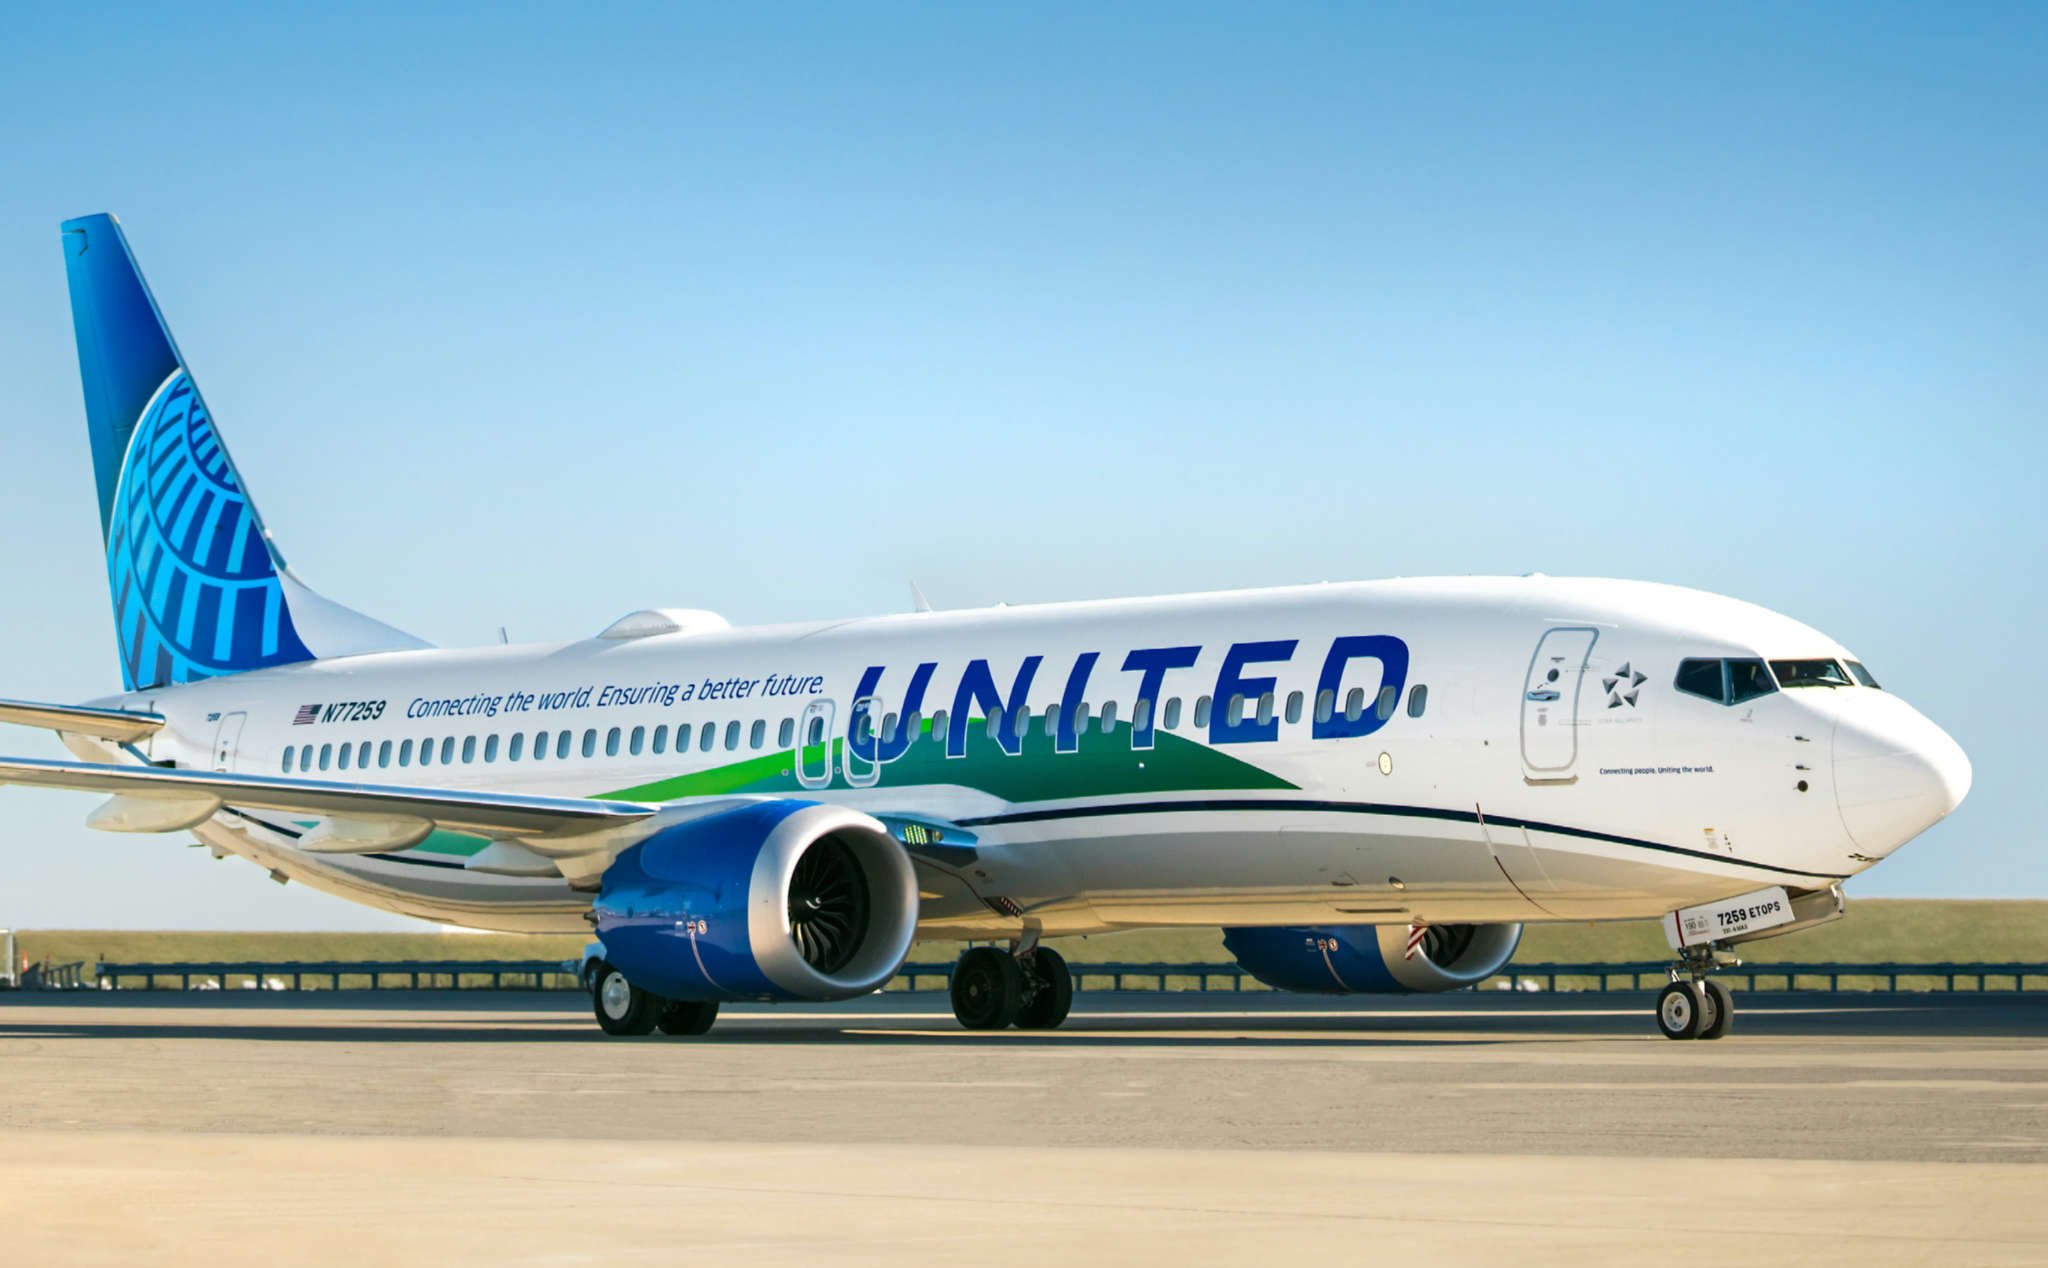 Chuyến bay thương mại đầu tiên dùng nhiên liệu xanh hoàn toàn cho 1 động cơ